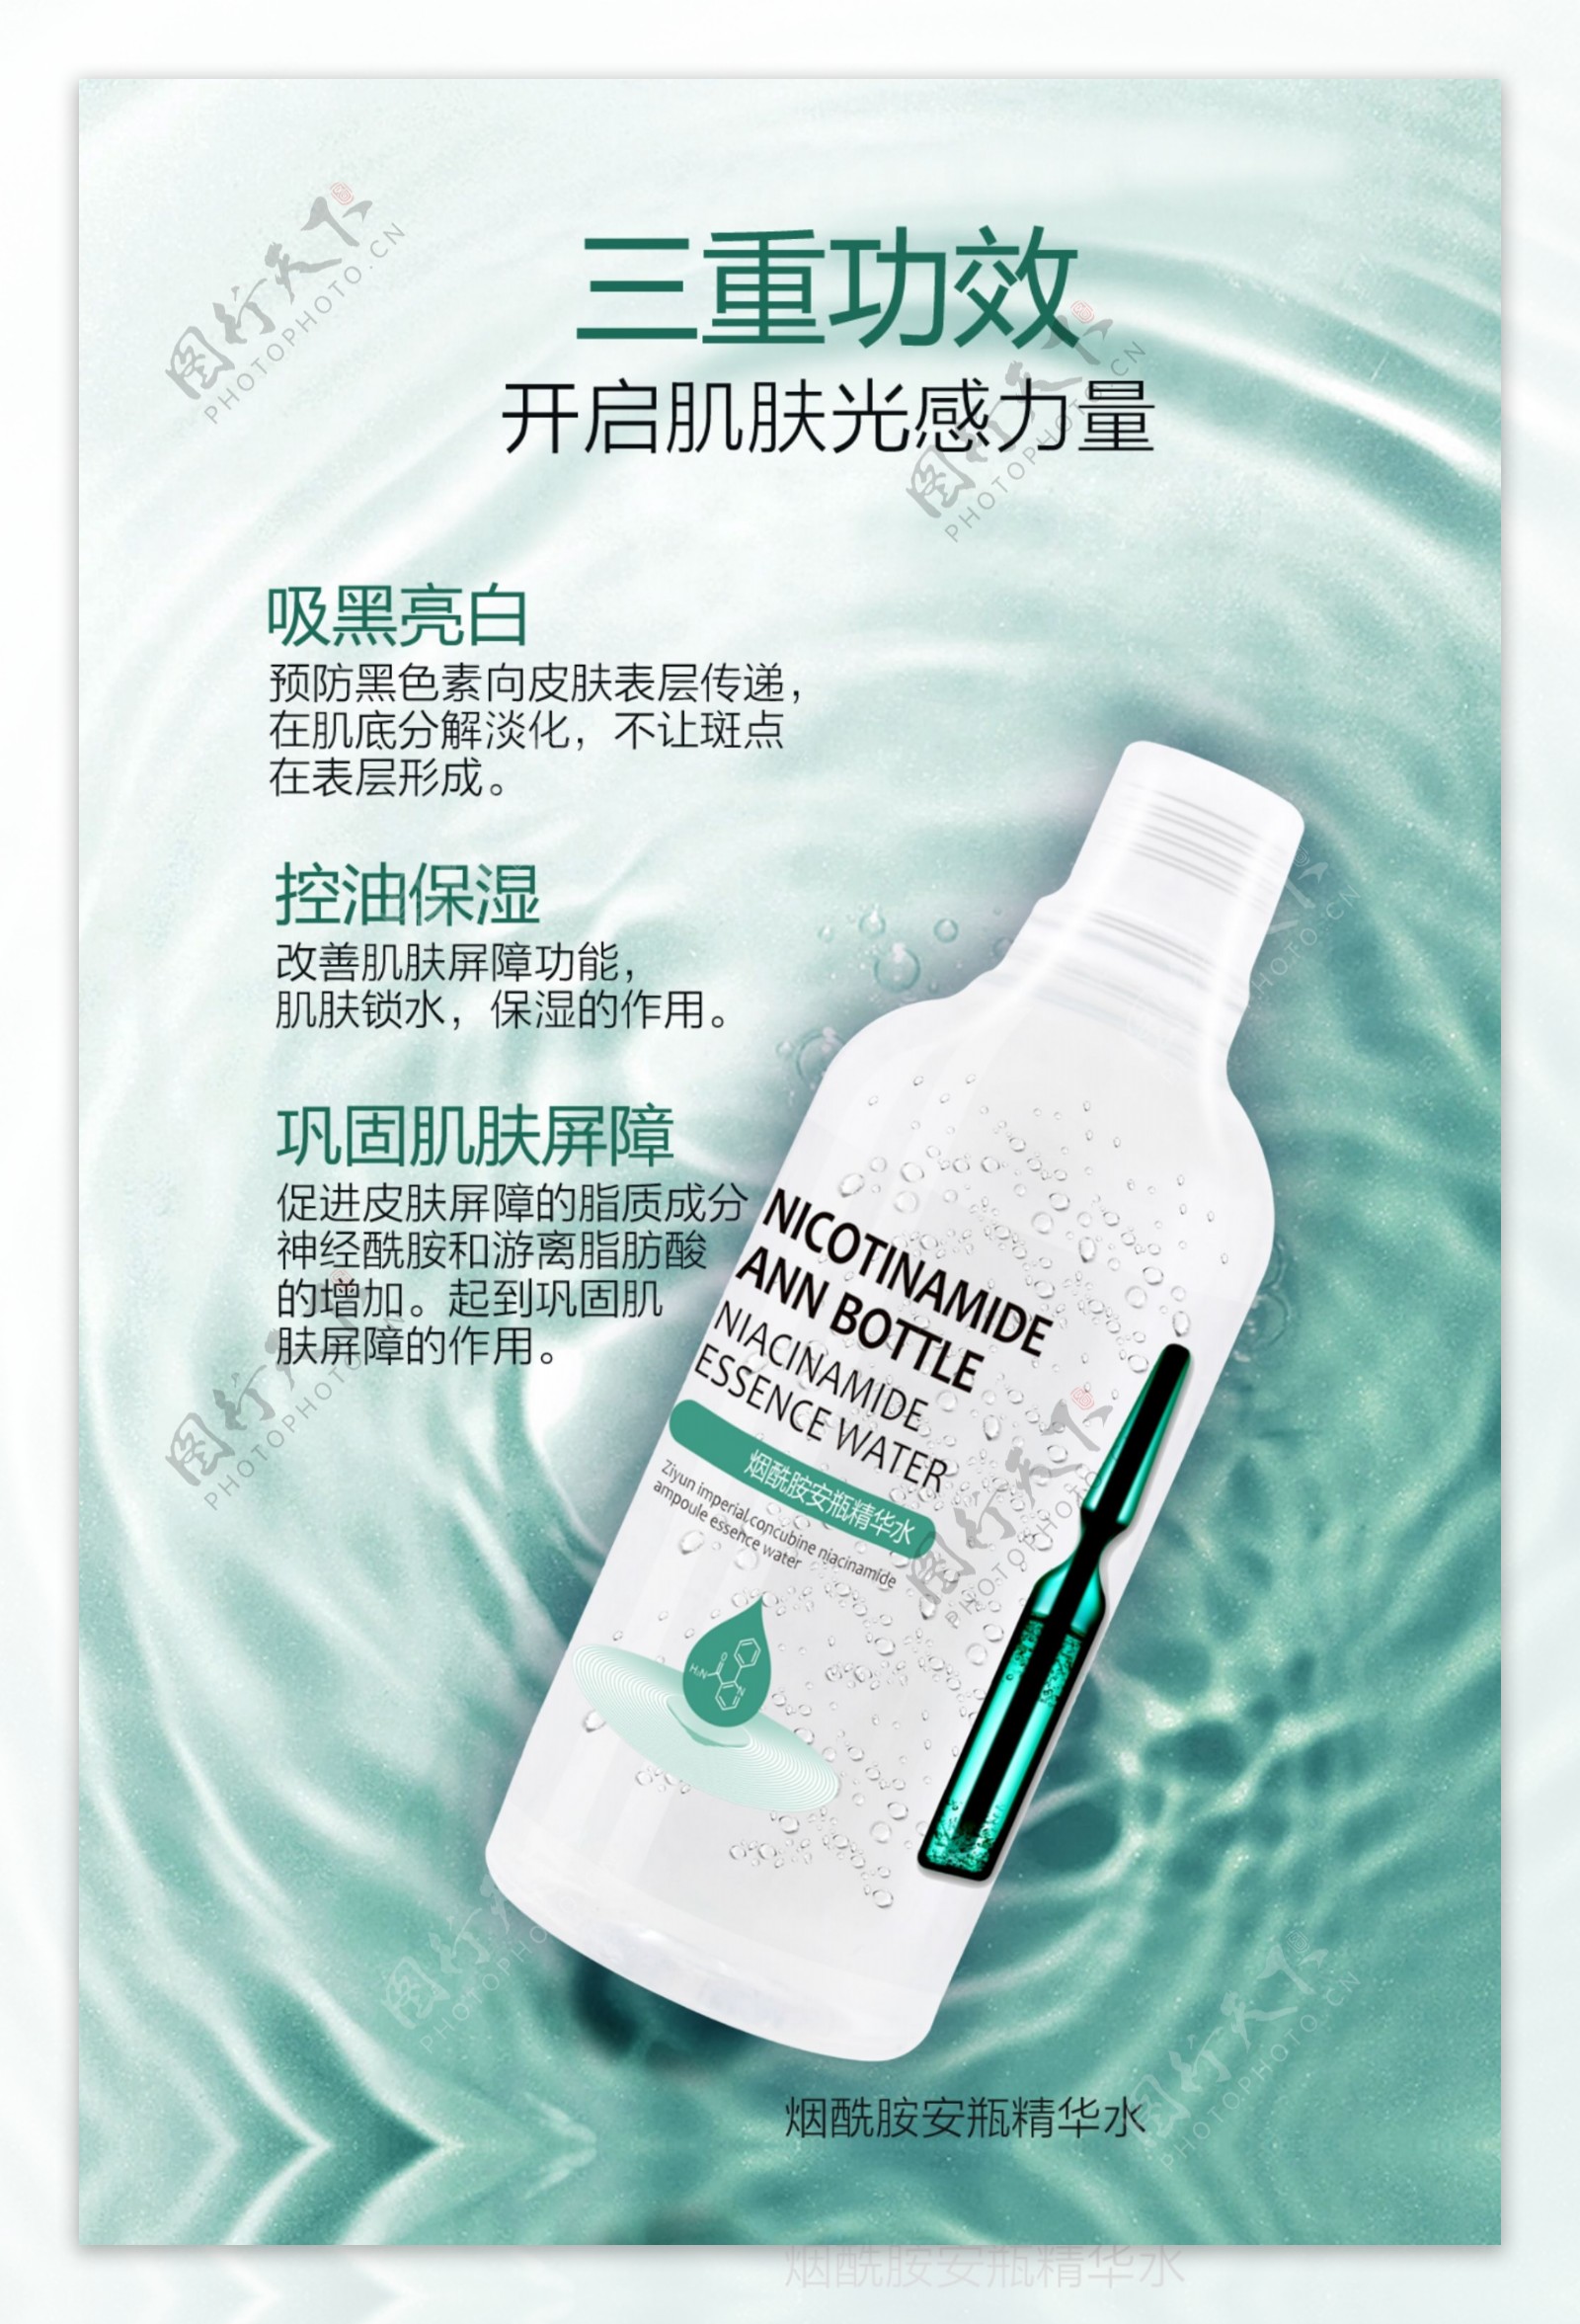 烟酰胺安瓶精华水宣传广告图